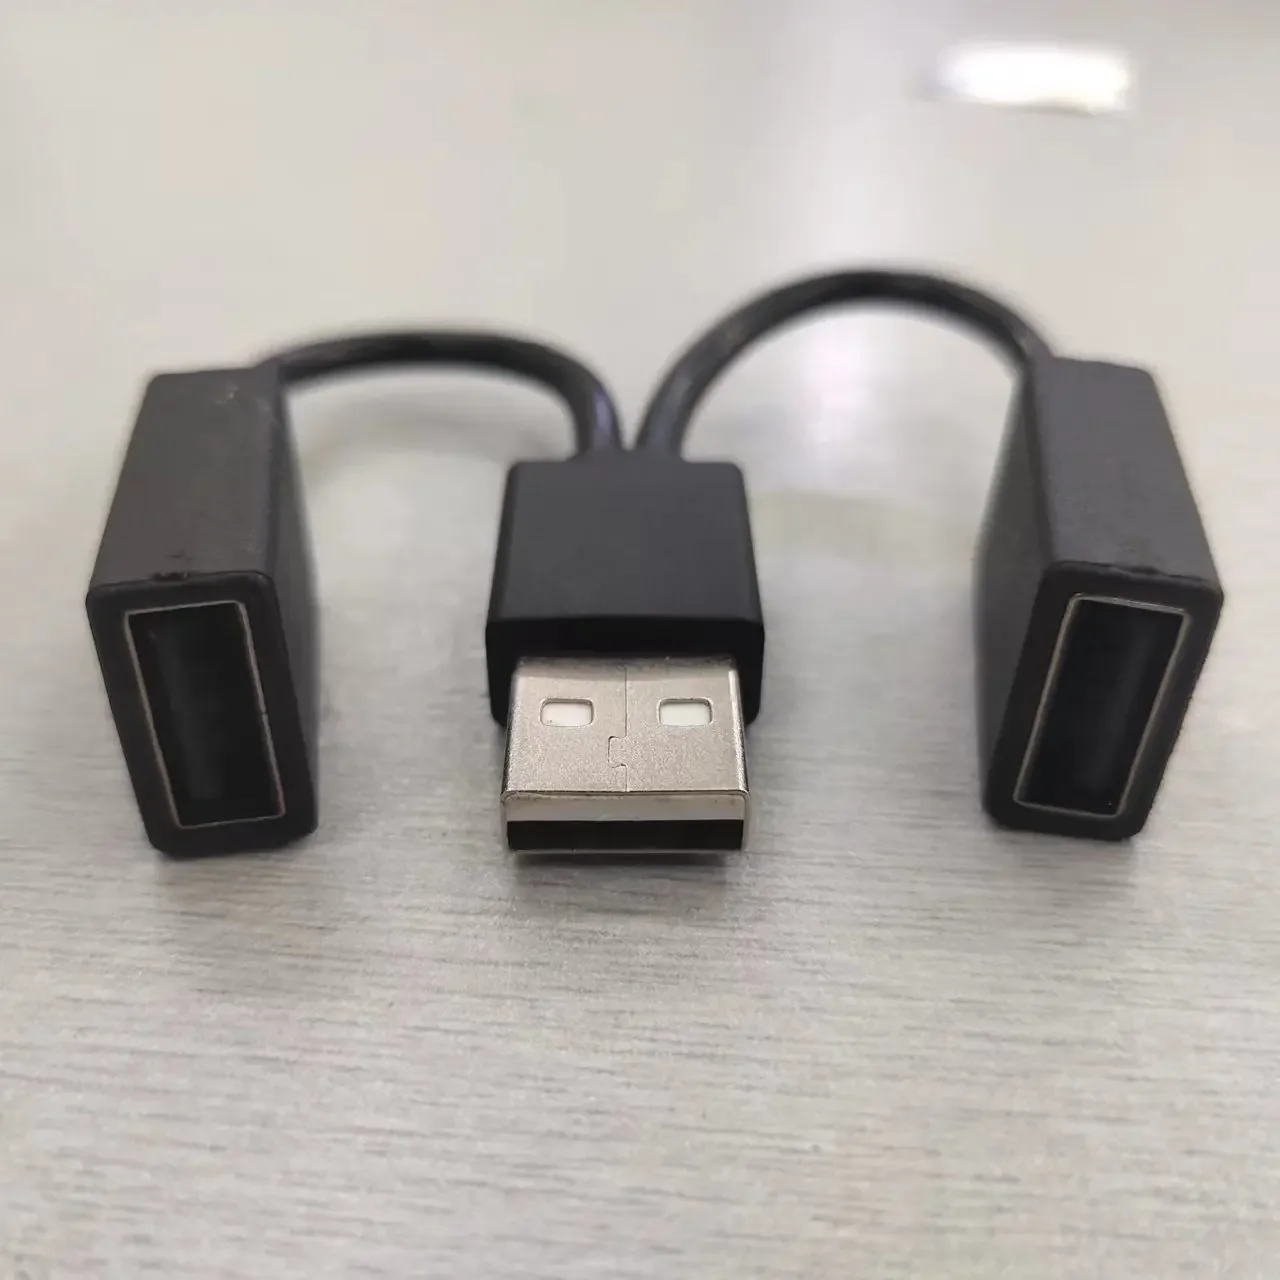 1 в 2 выхода USB-концентратор автомобильный Usb-разветвитель Кабель многофункциональный адаптер Шнур зарядный кабель для iphone Android смартфона